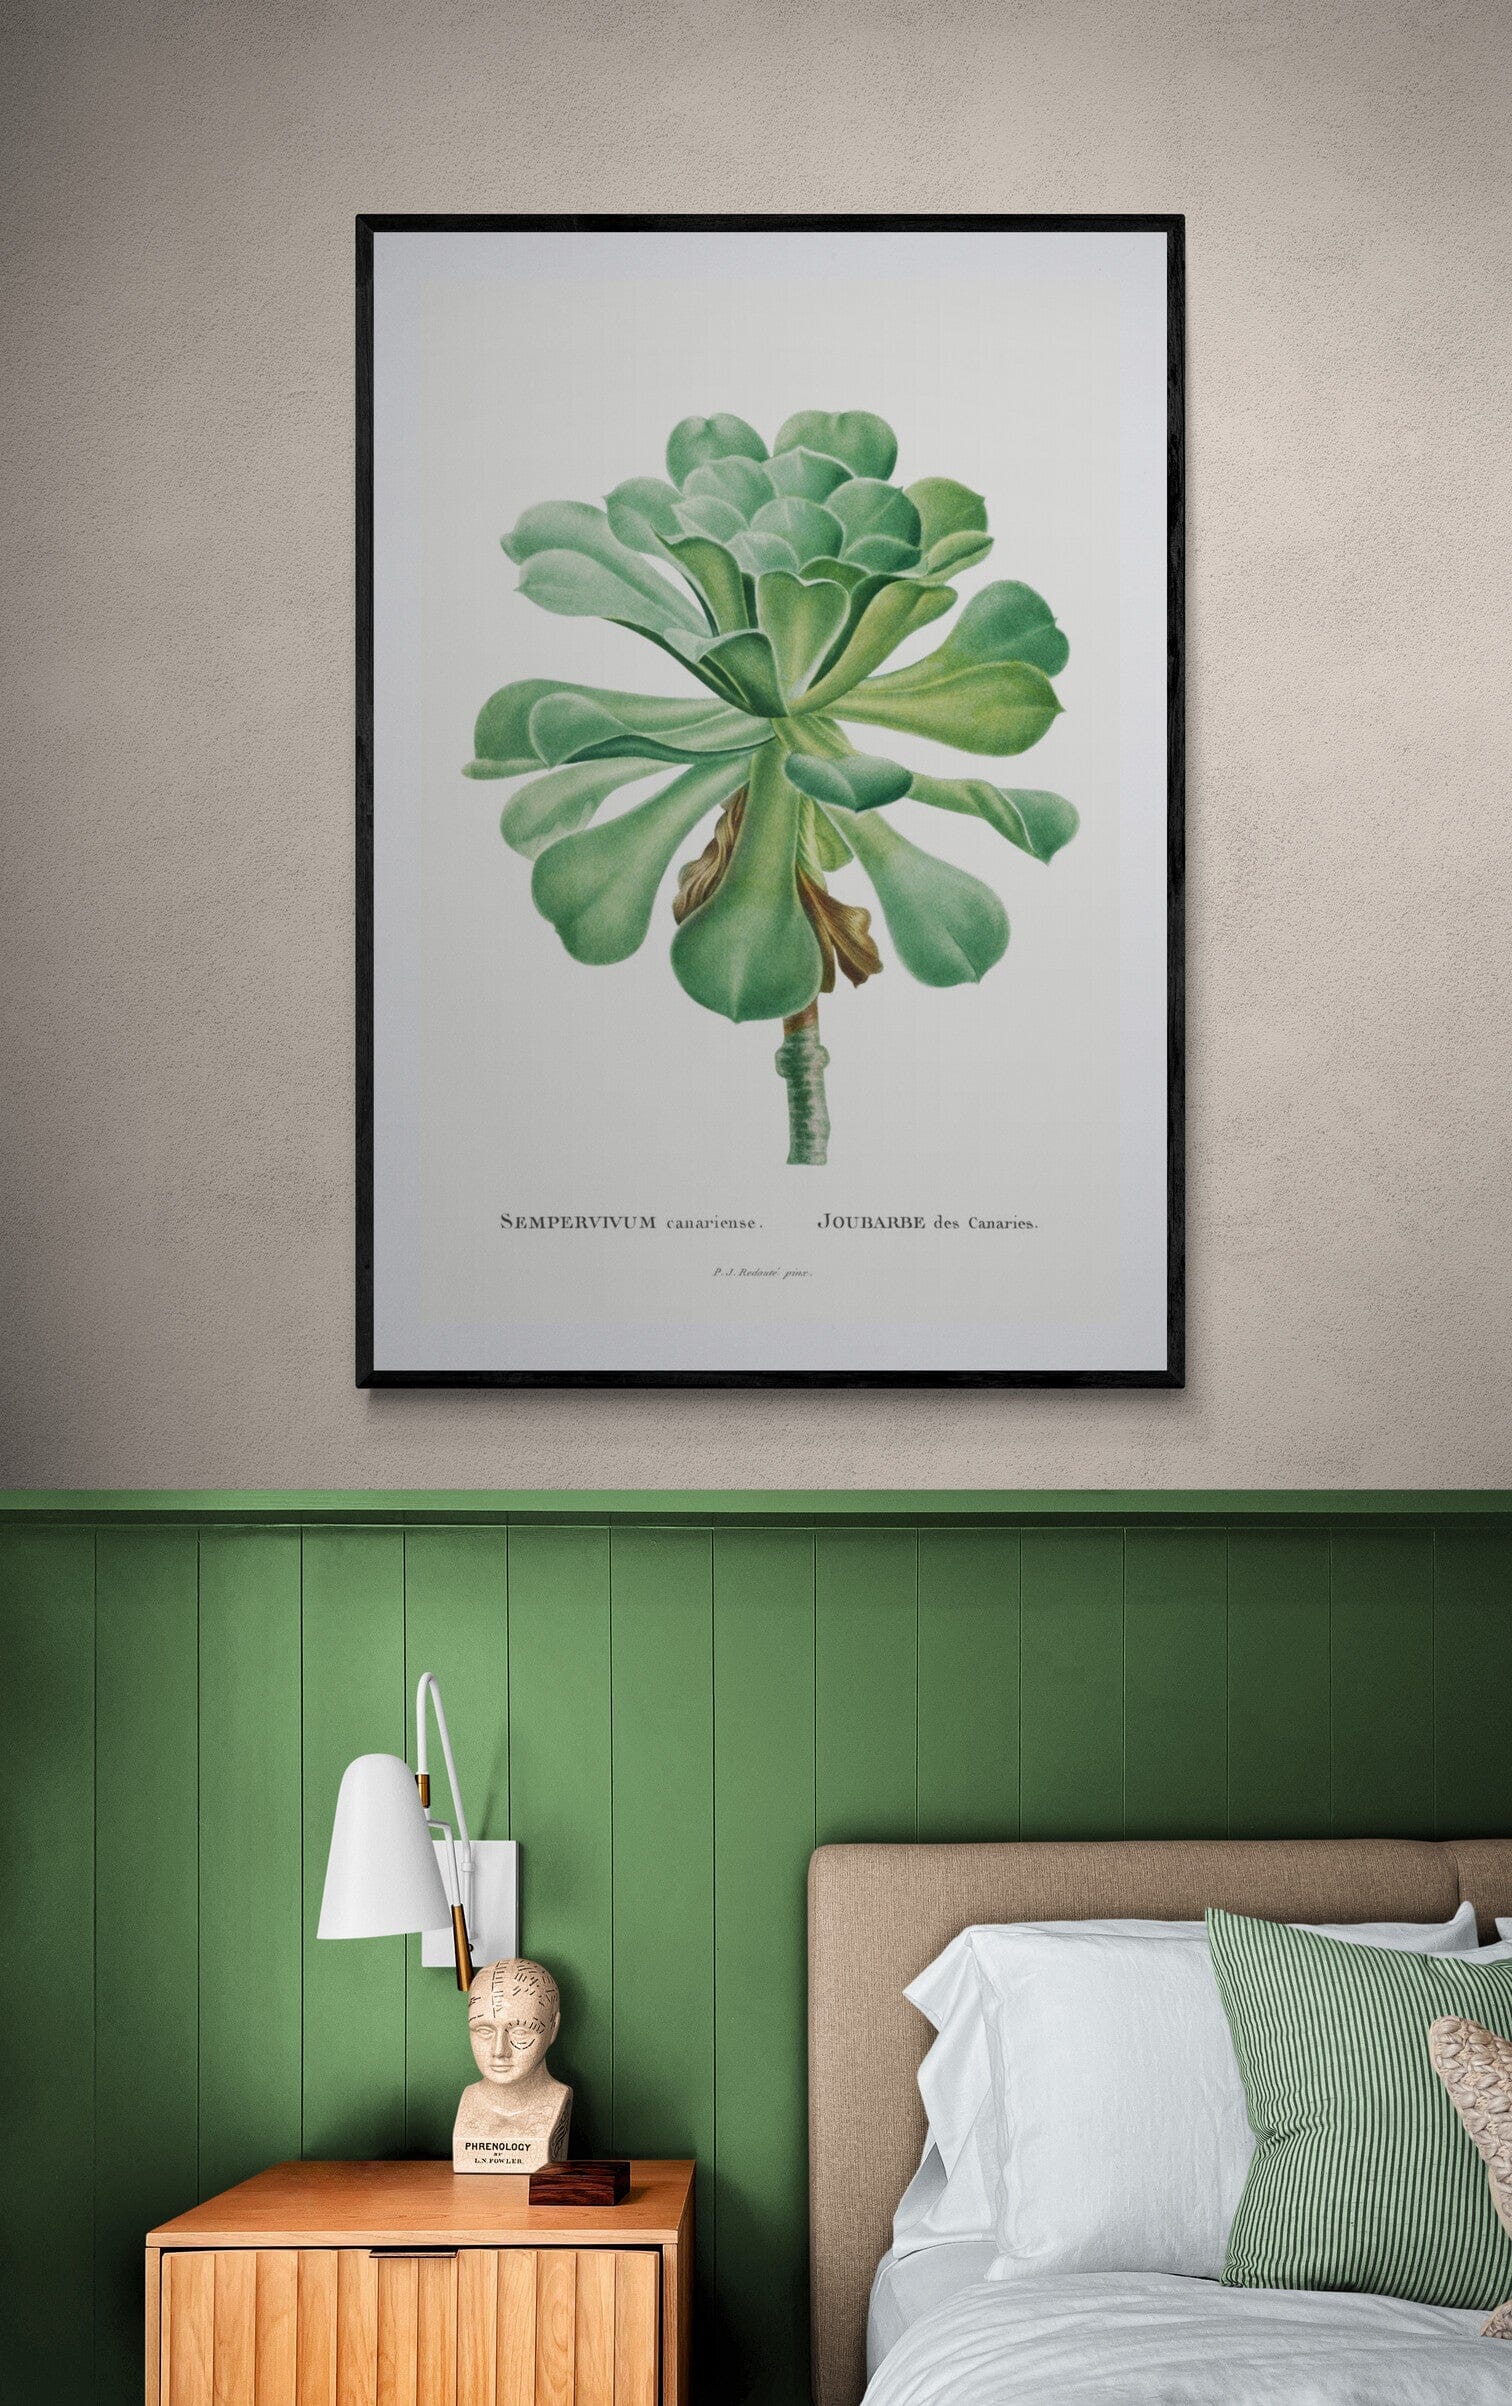 Sempervivum plant (1800s) | Vintage botanical prints | Pierre-Joseph Redouté Posters, Prints, & Visual Artwork The Trumpet Shop   